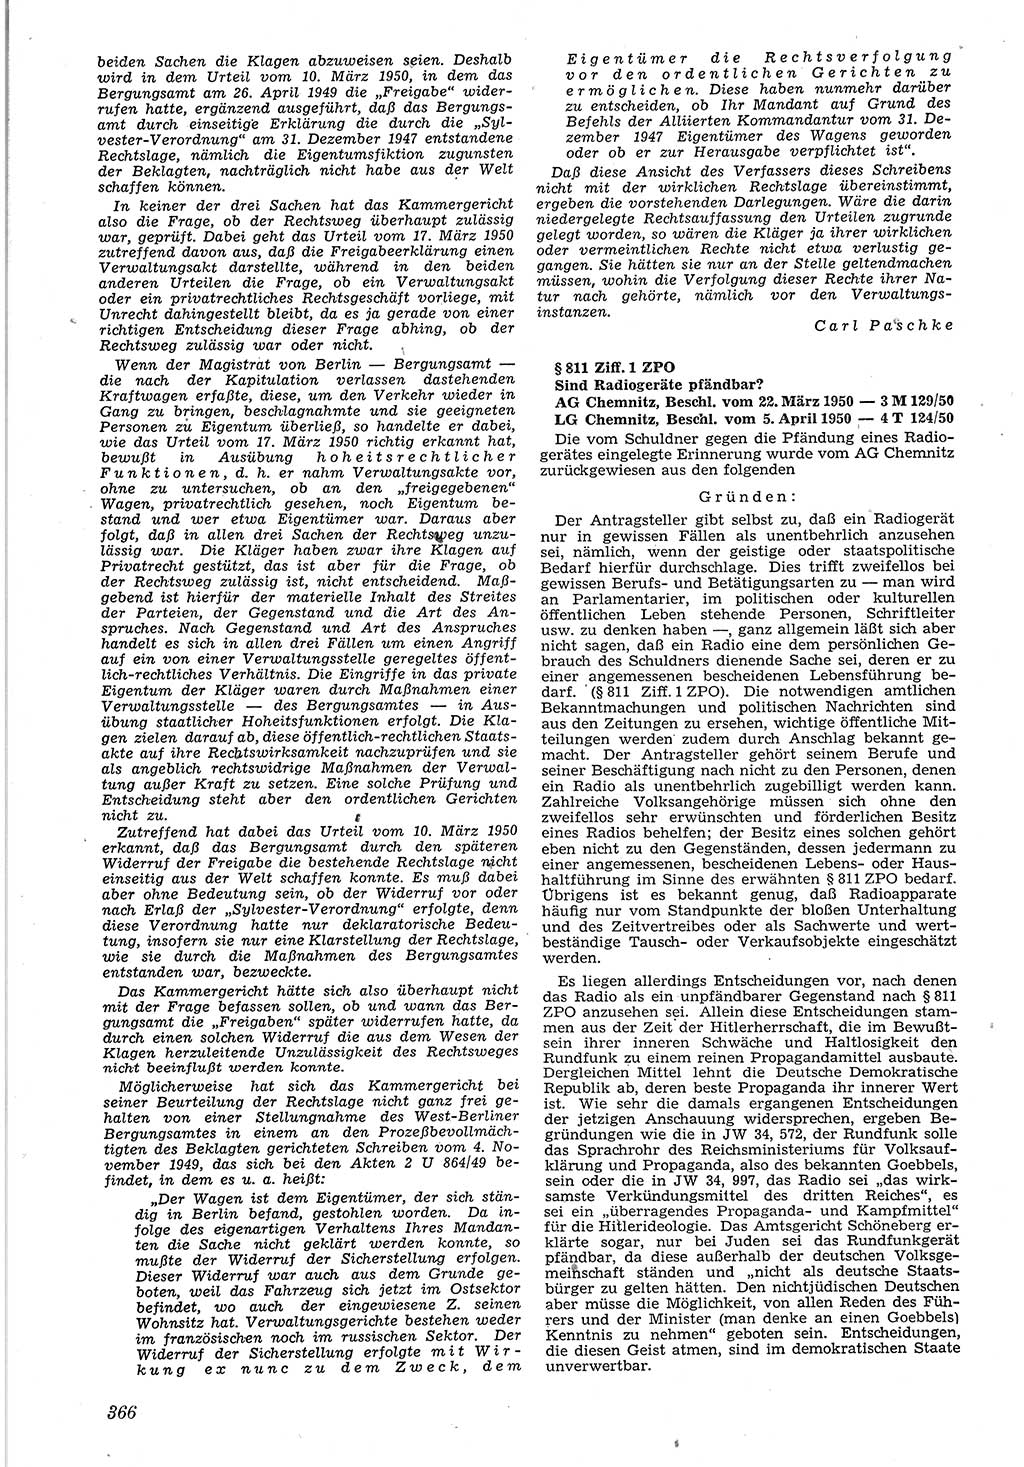 Neue Justiz (NJ), Zeitschrift für Recht und Rechtswissenschaft [Deutsche Demokratische Republik (DDR)], 4. Jahrgang 1950, Seite 366 (NJ DDR 1950, S. 366)